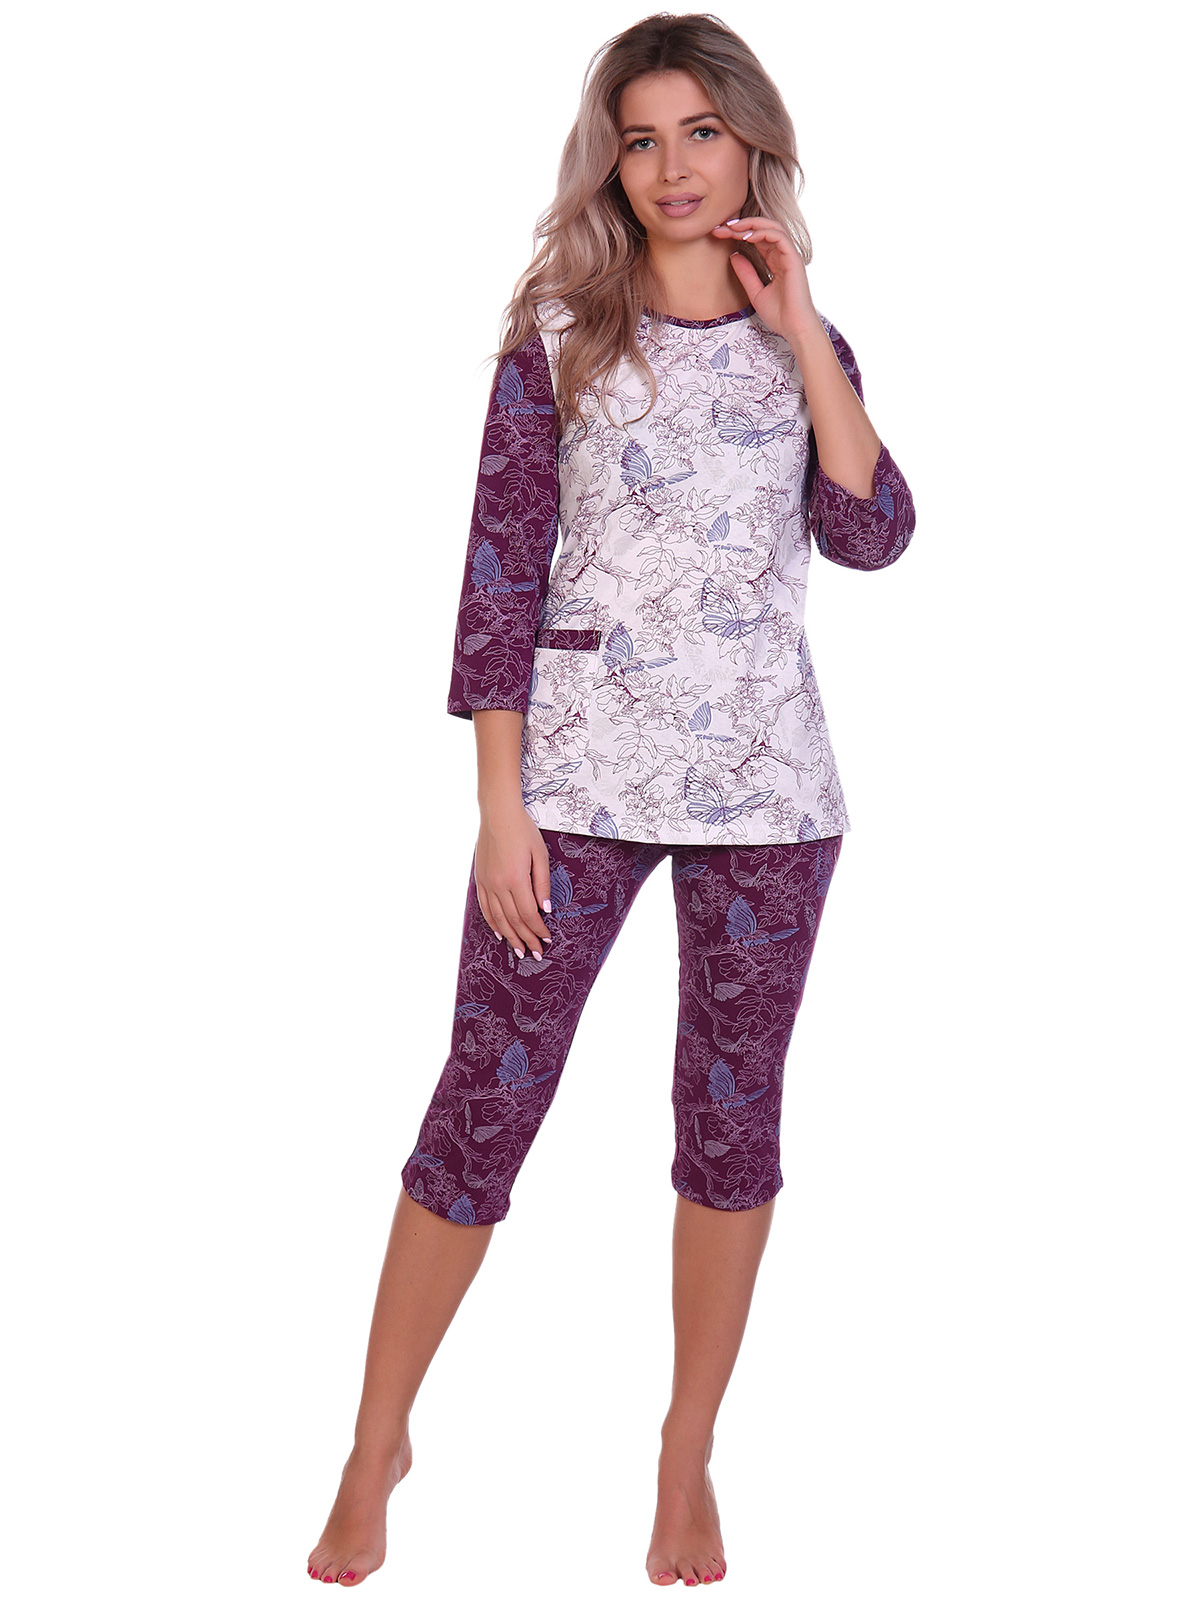 Жен. пижама арт. 16-0705 Бордовый р. 56 НСД Трикотаж, размер 56 - фото 2